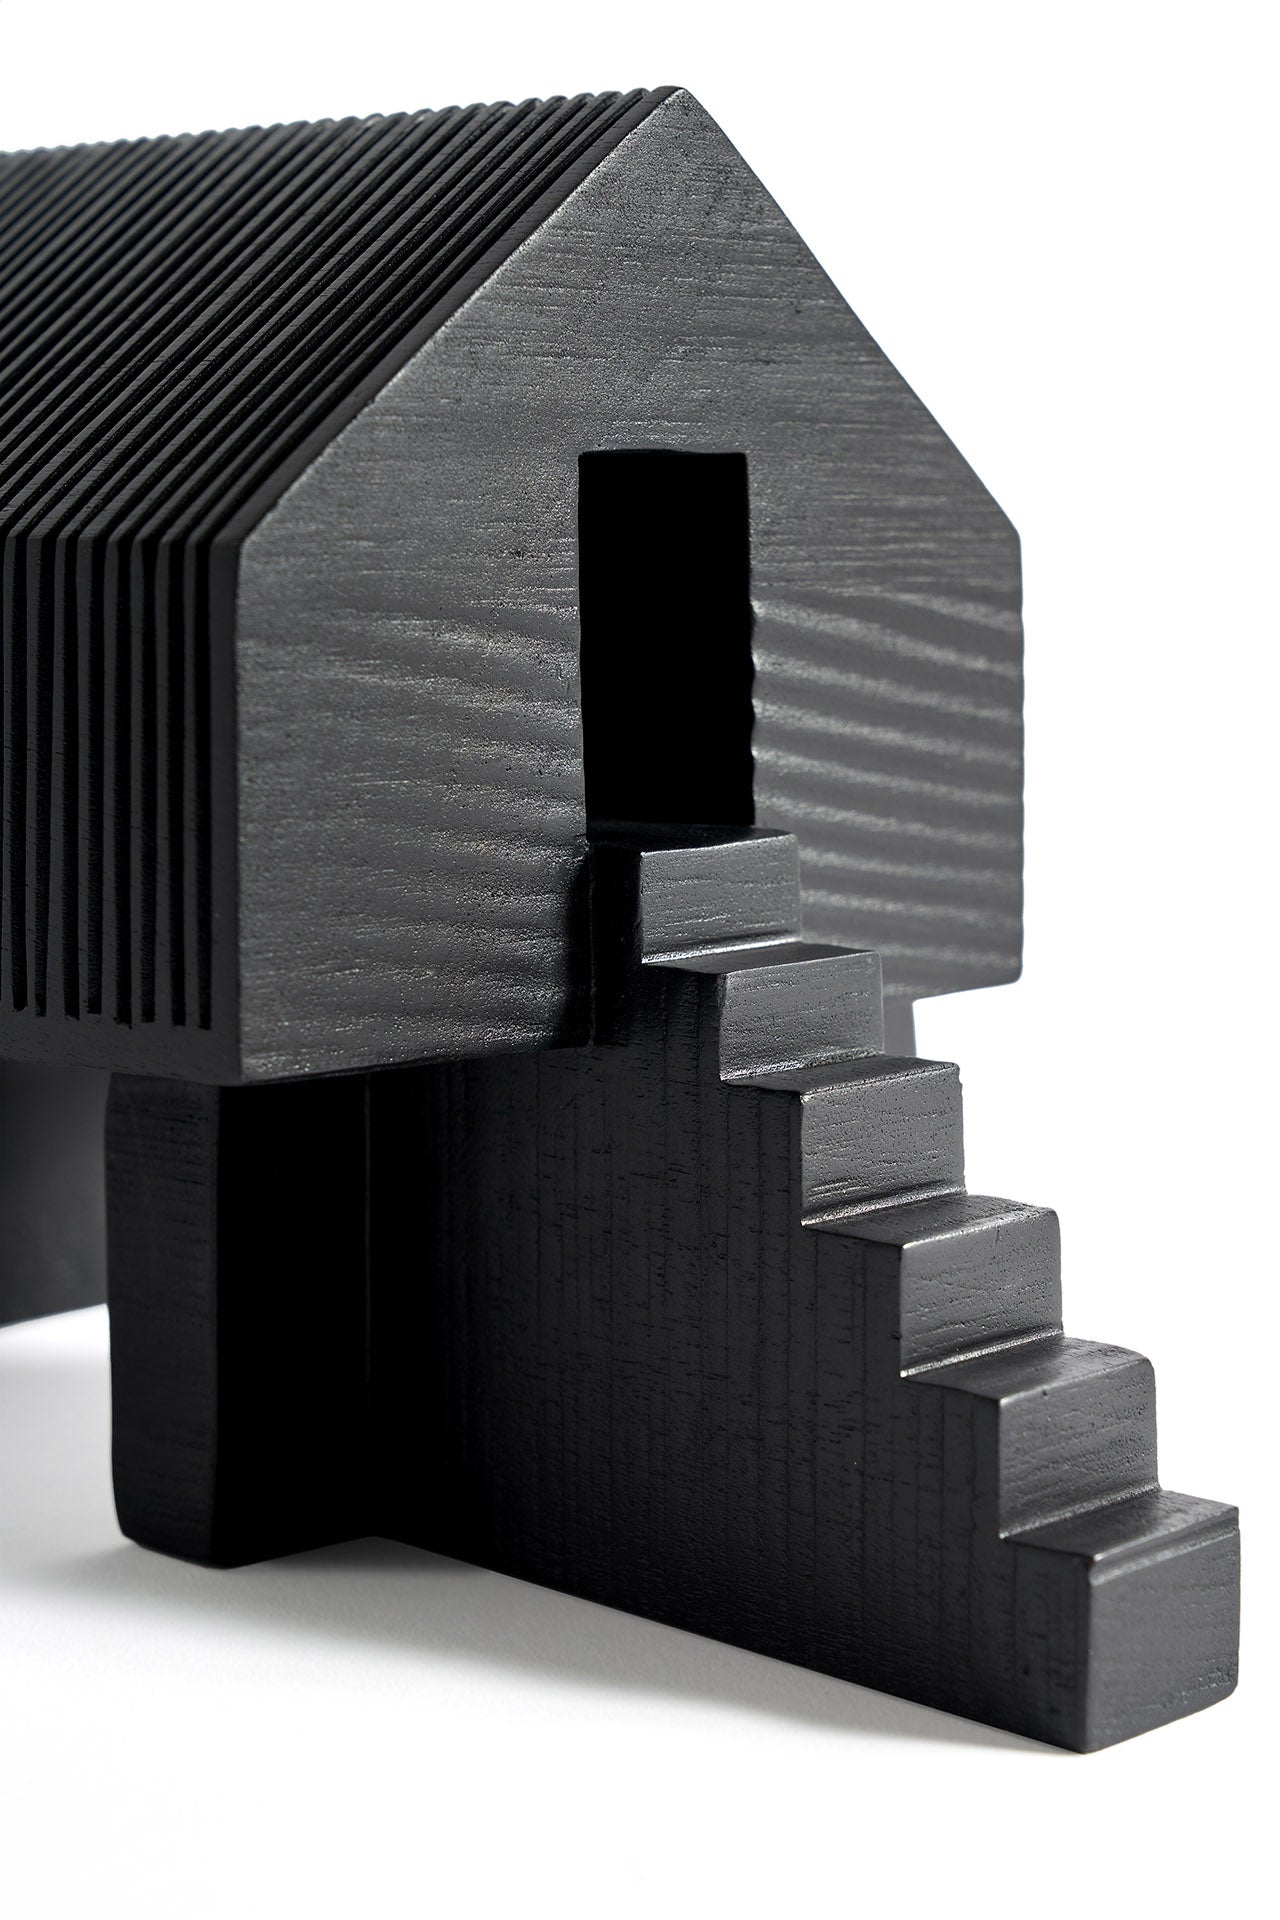 Black Stilt House object